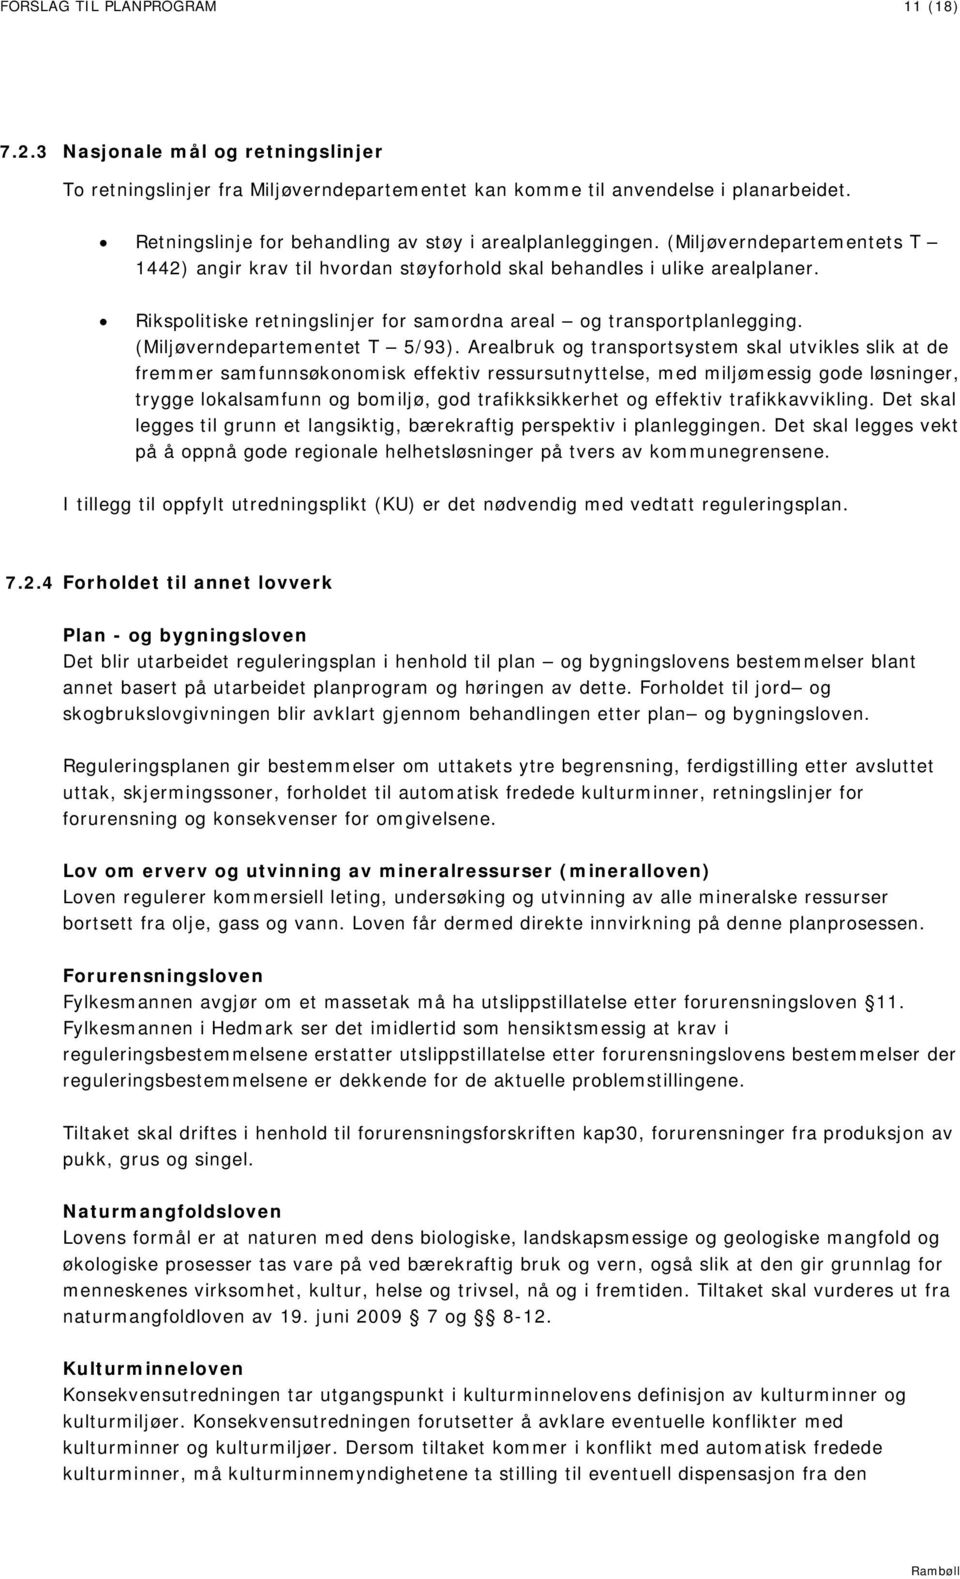 Rikspolitiske retningslinjer for samordna areal og transportplanlegging. (Miljøverndepartementet T 5/93).